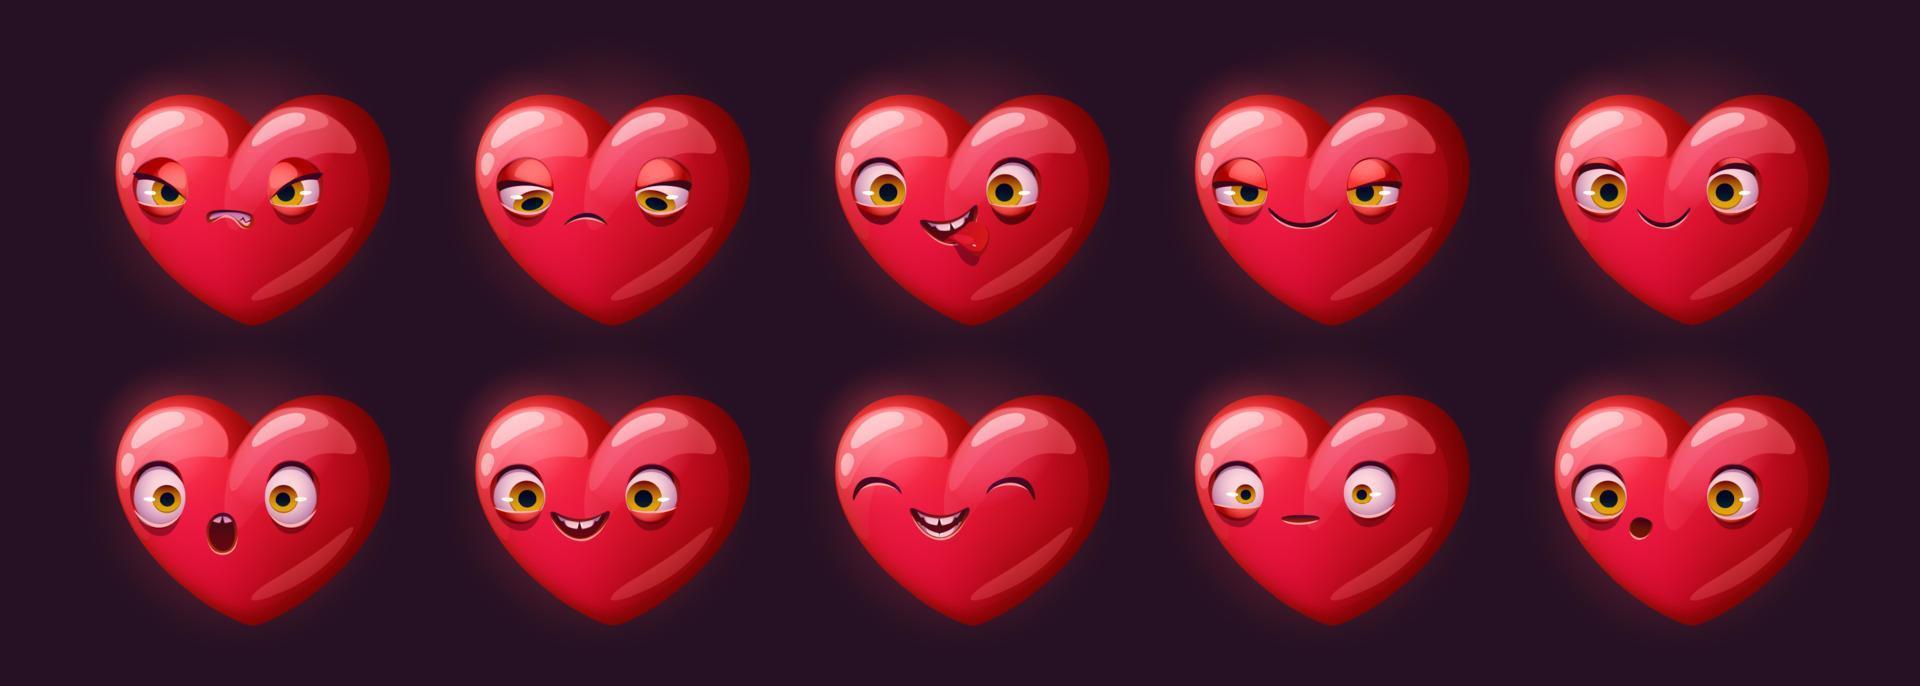 personagem bonito coração vermelho com emoções diferentes vetor